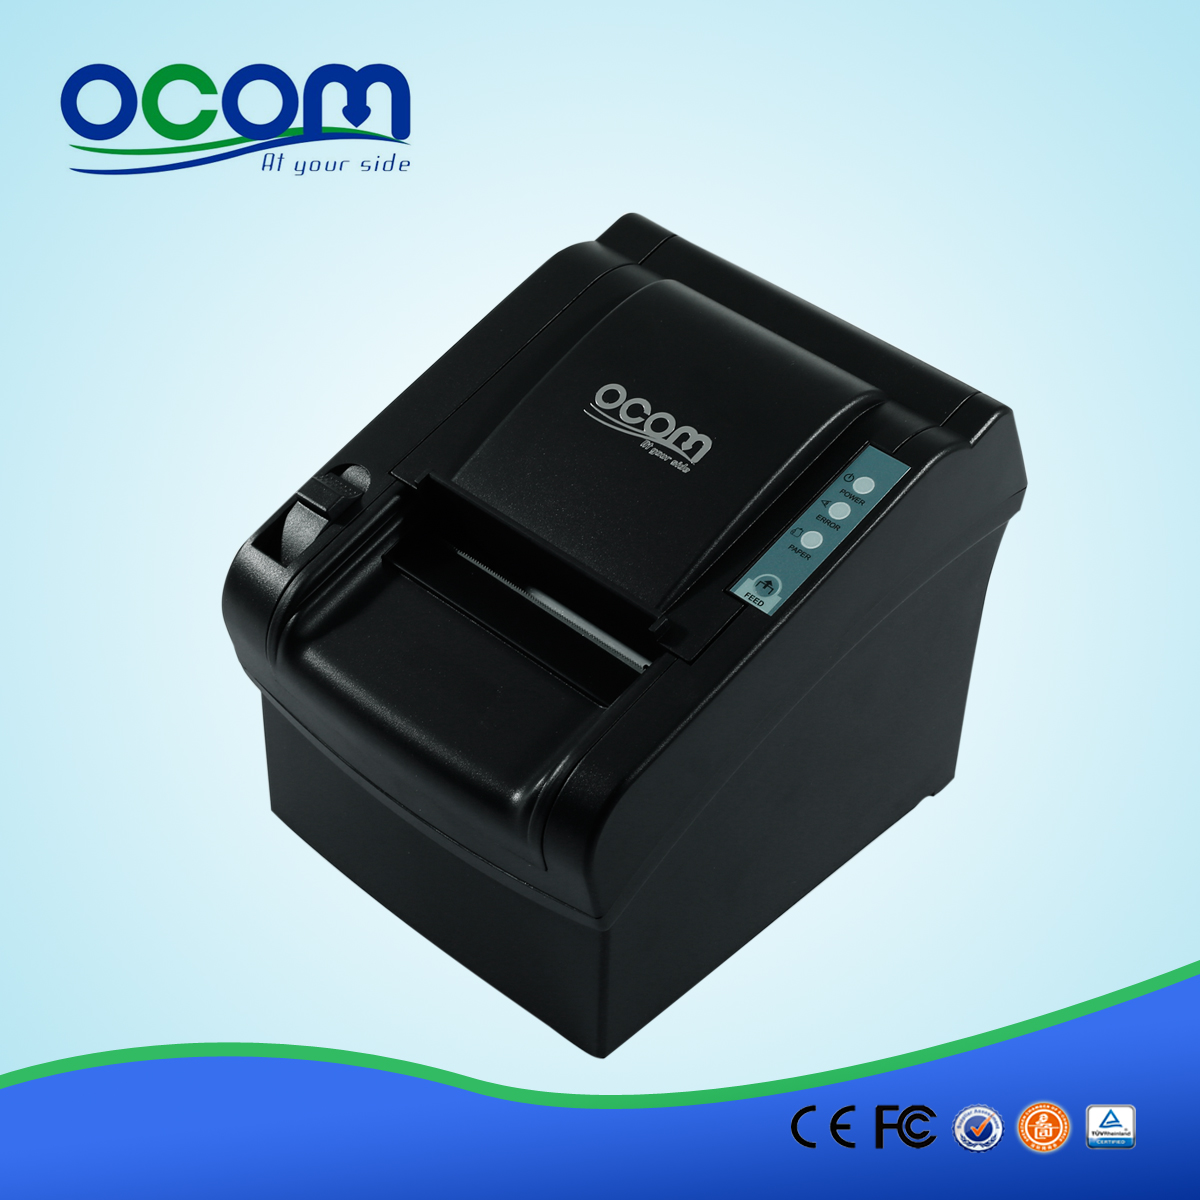 OCPP-802: en vente imprimante ticket thermique pos, le prix de l'imprimante thermique directe